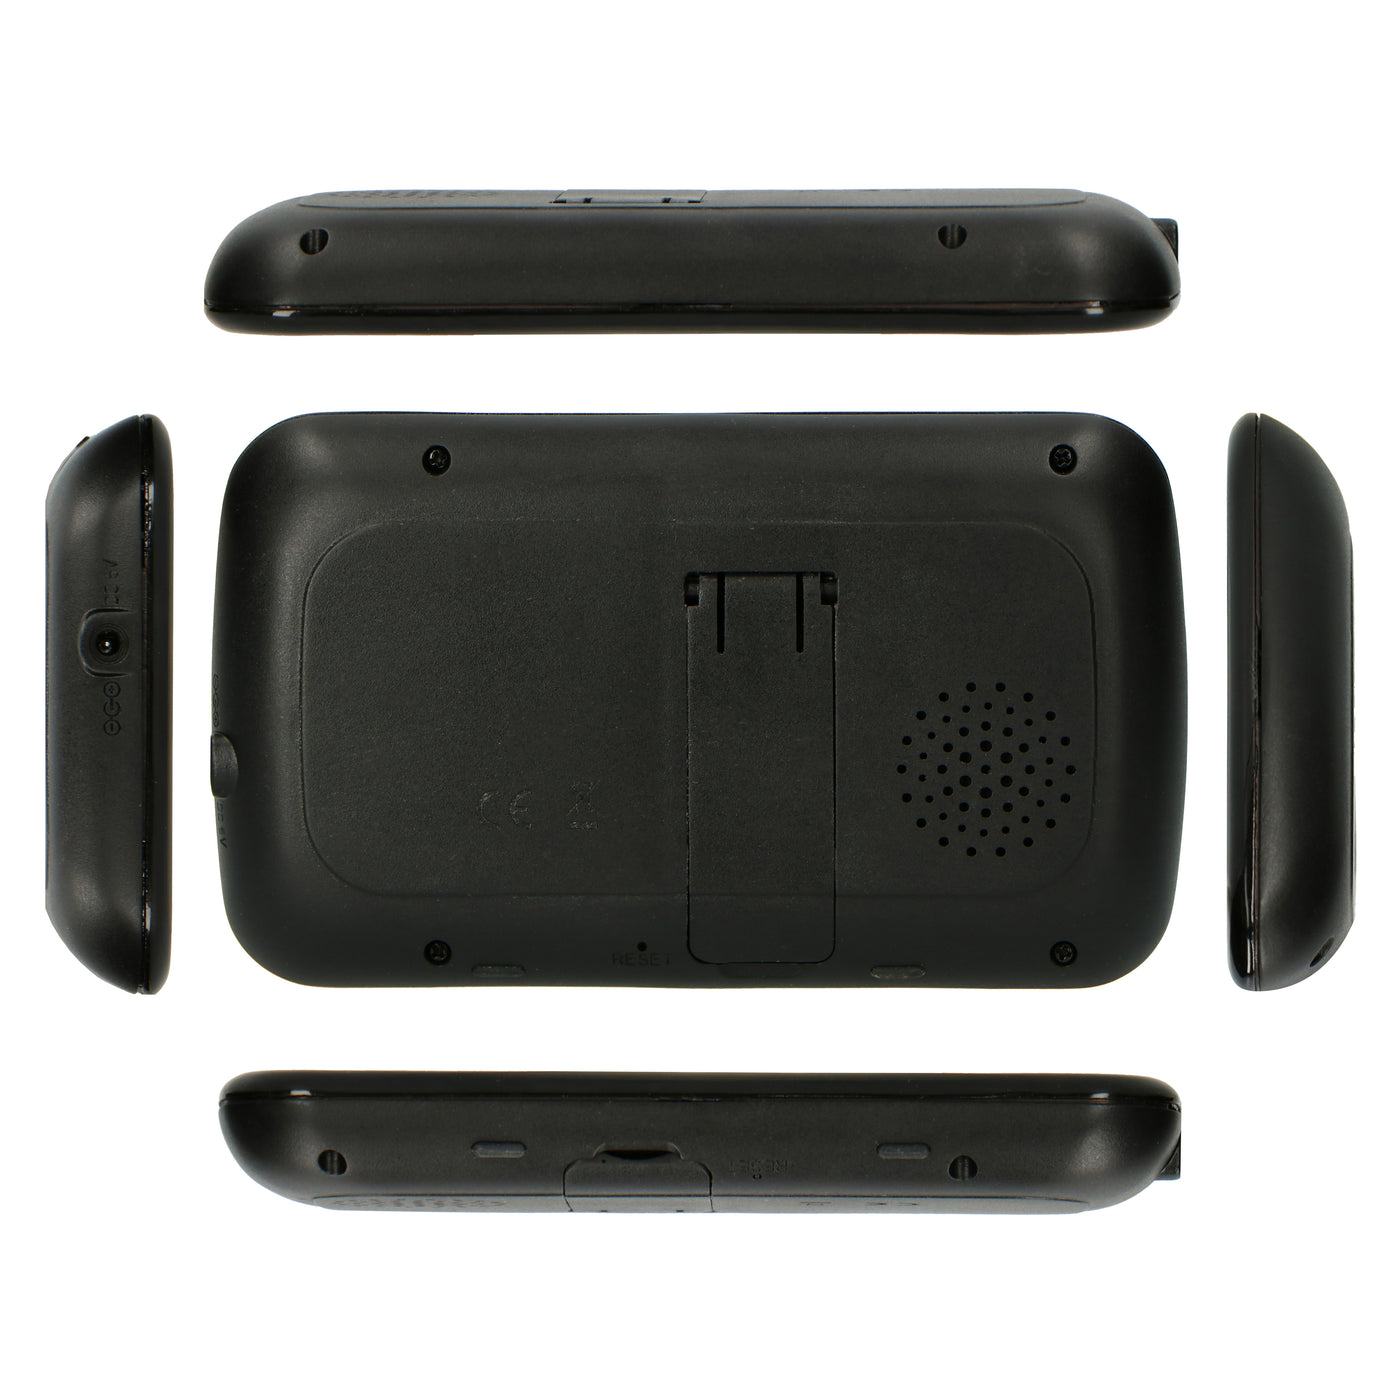 Alecto DVM135BK - Babyphone avec caméra et écran couleur 3.5", noir